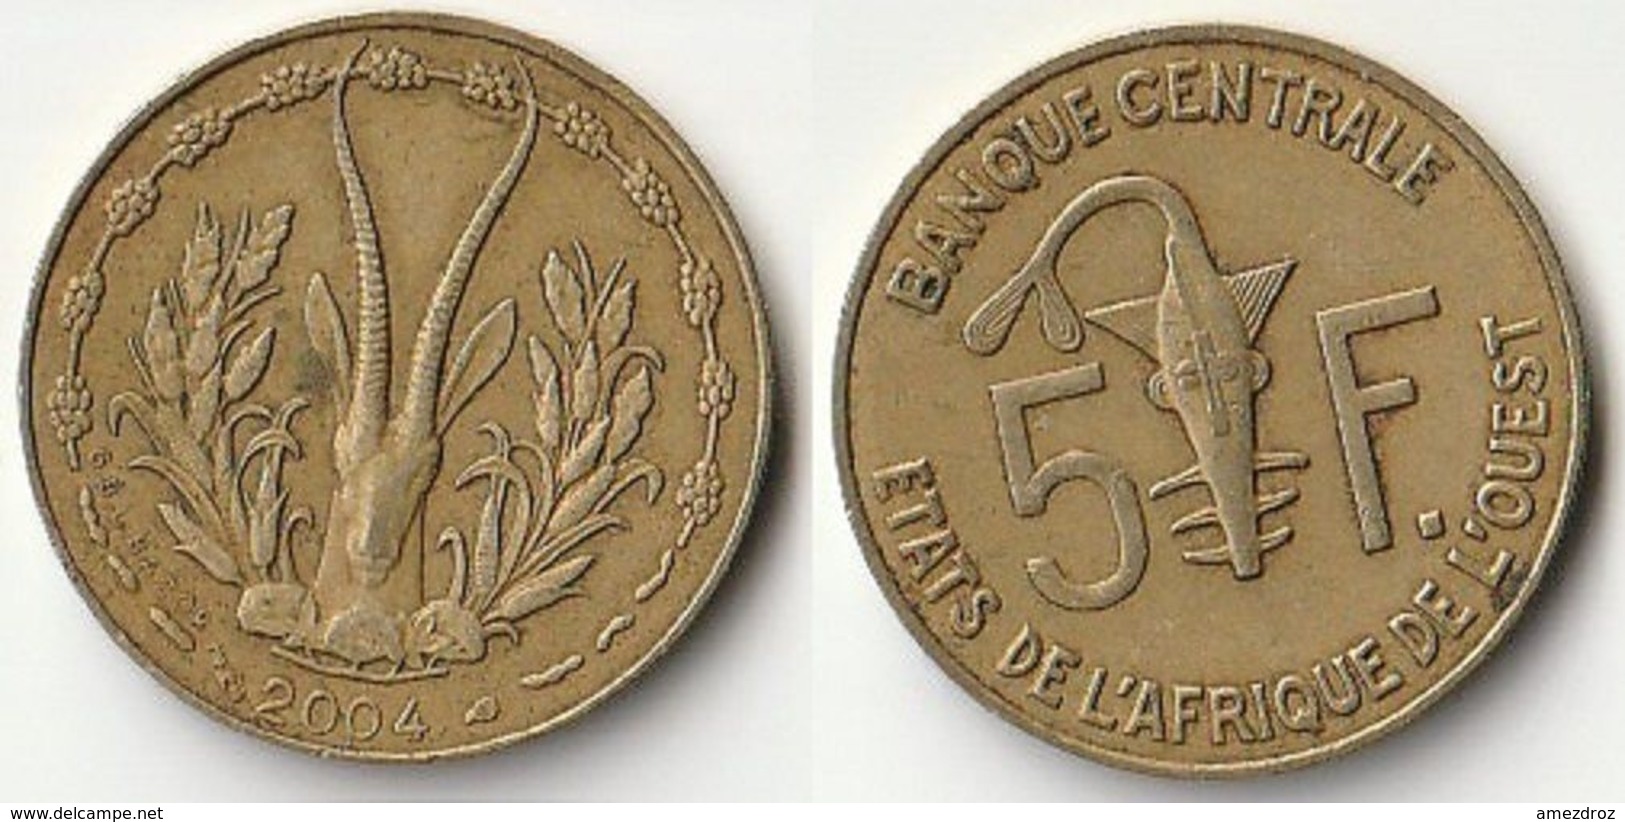 Pièce De 5 Francs CFA XOF 2004 Origine Côte D'Ivoire Afrique De L'Ouest (v) - Côte-d'Ivoire